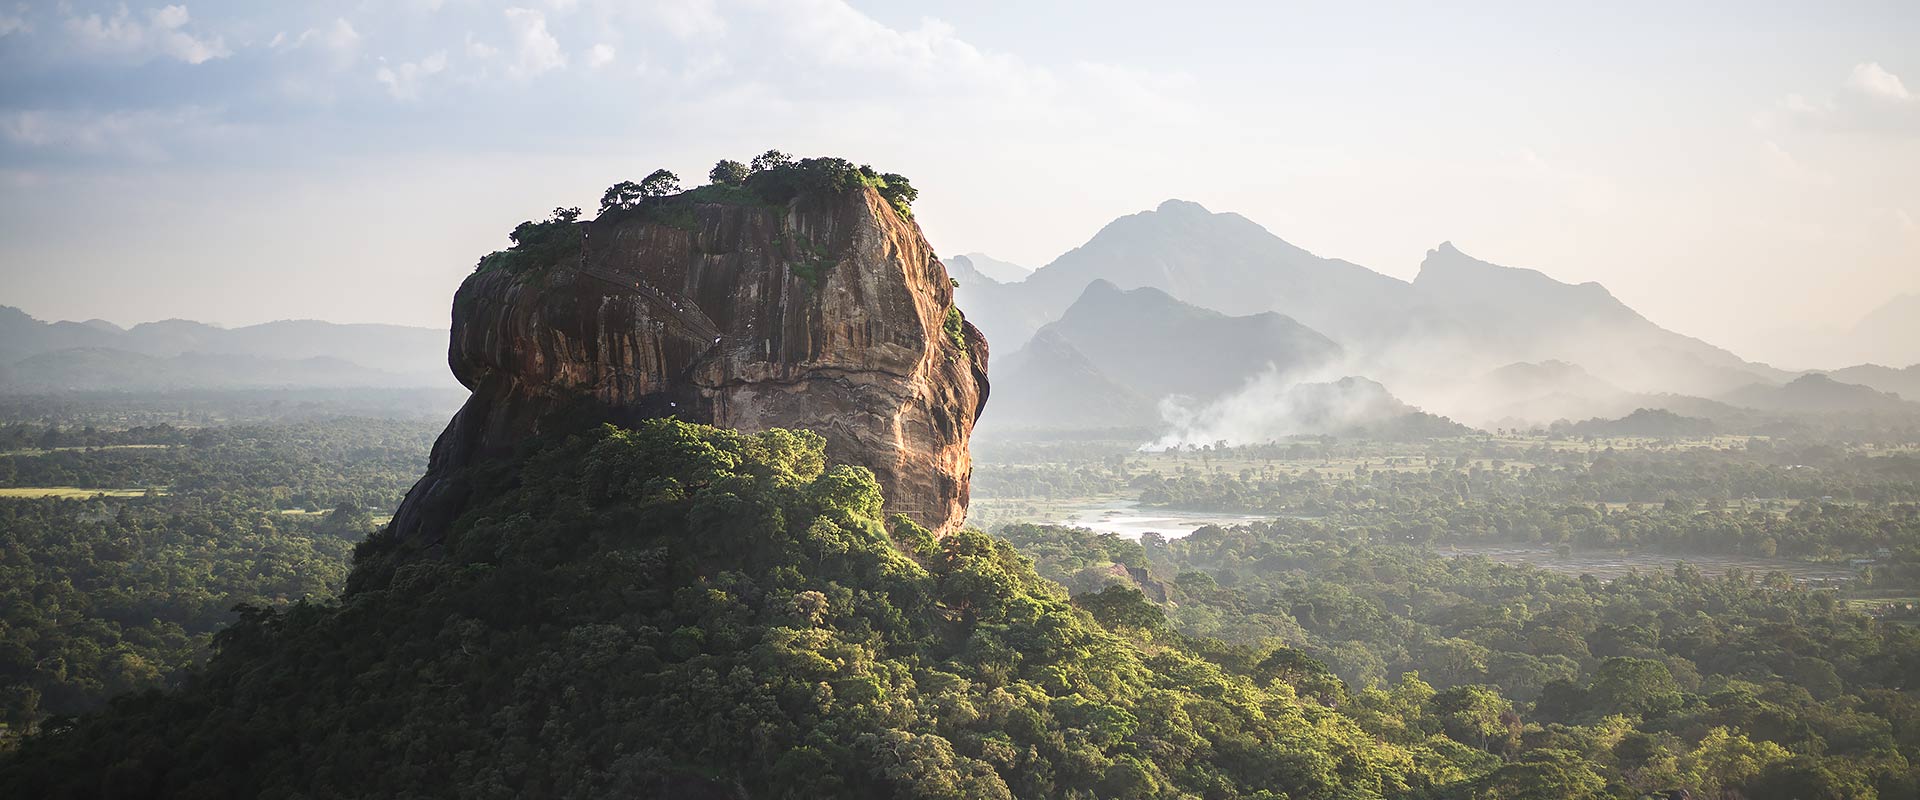 سفر به زیبا ترین جزیره جهان سریلانکا